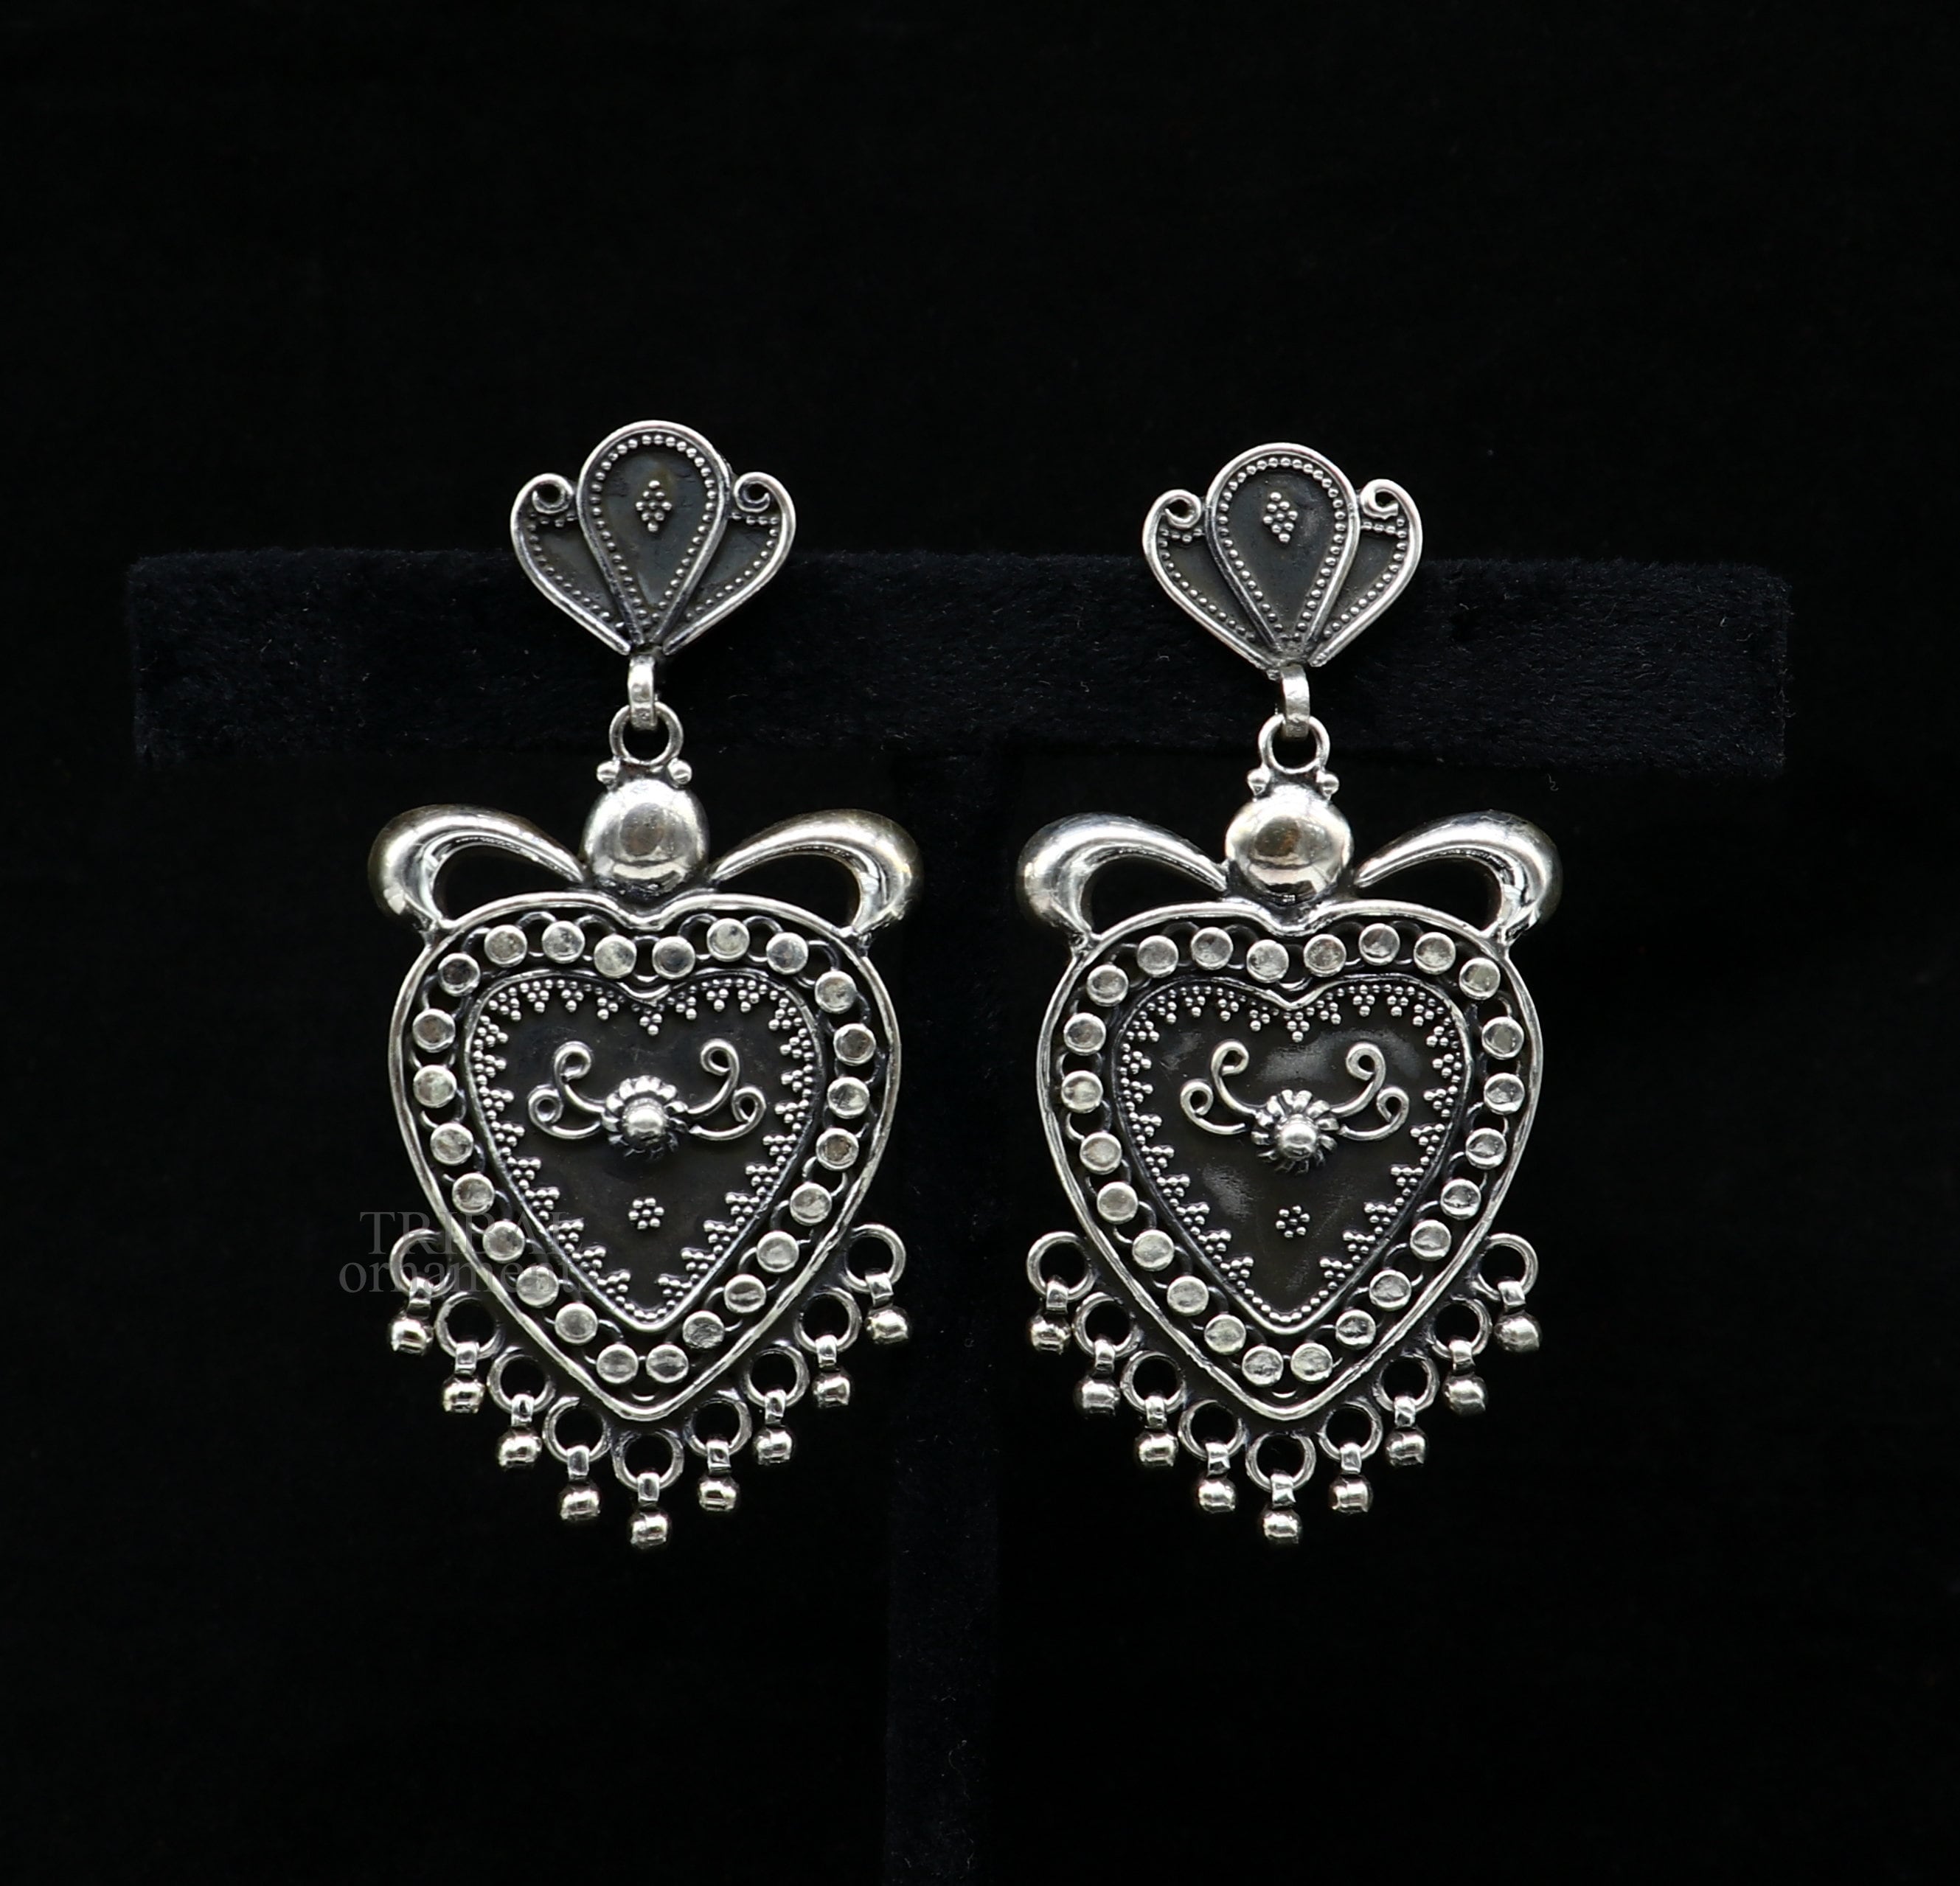 Buy SLUYNZ 925 Sterling Silver 1.6CM Heart Hoop Earrings for Women Teen  Girls Sweet Love Heart Earrings Drop (A-Silver) at Amazon.in